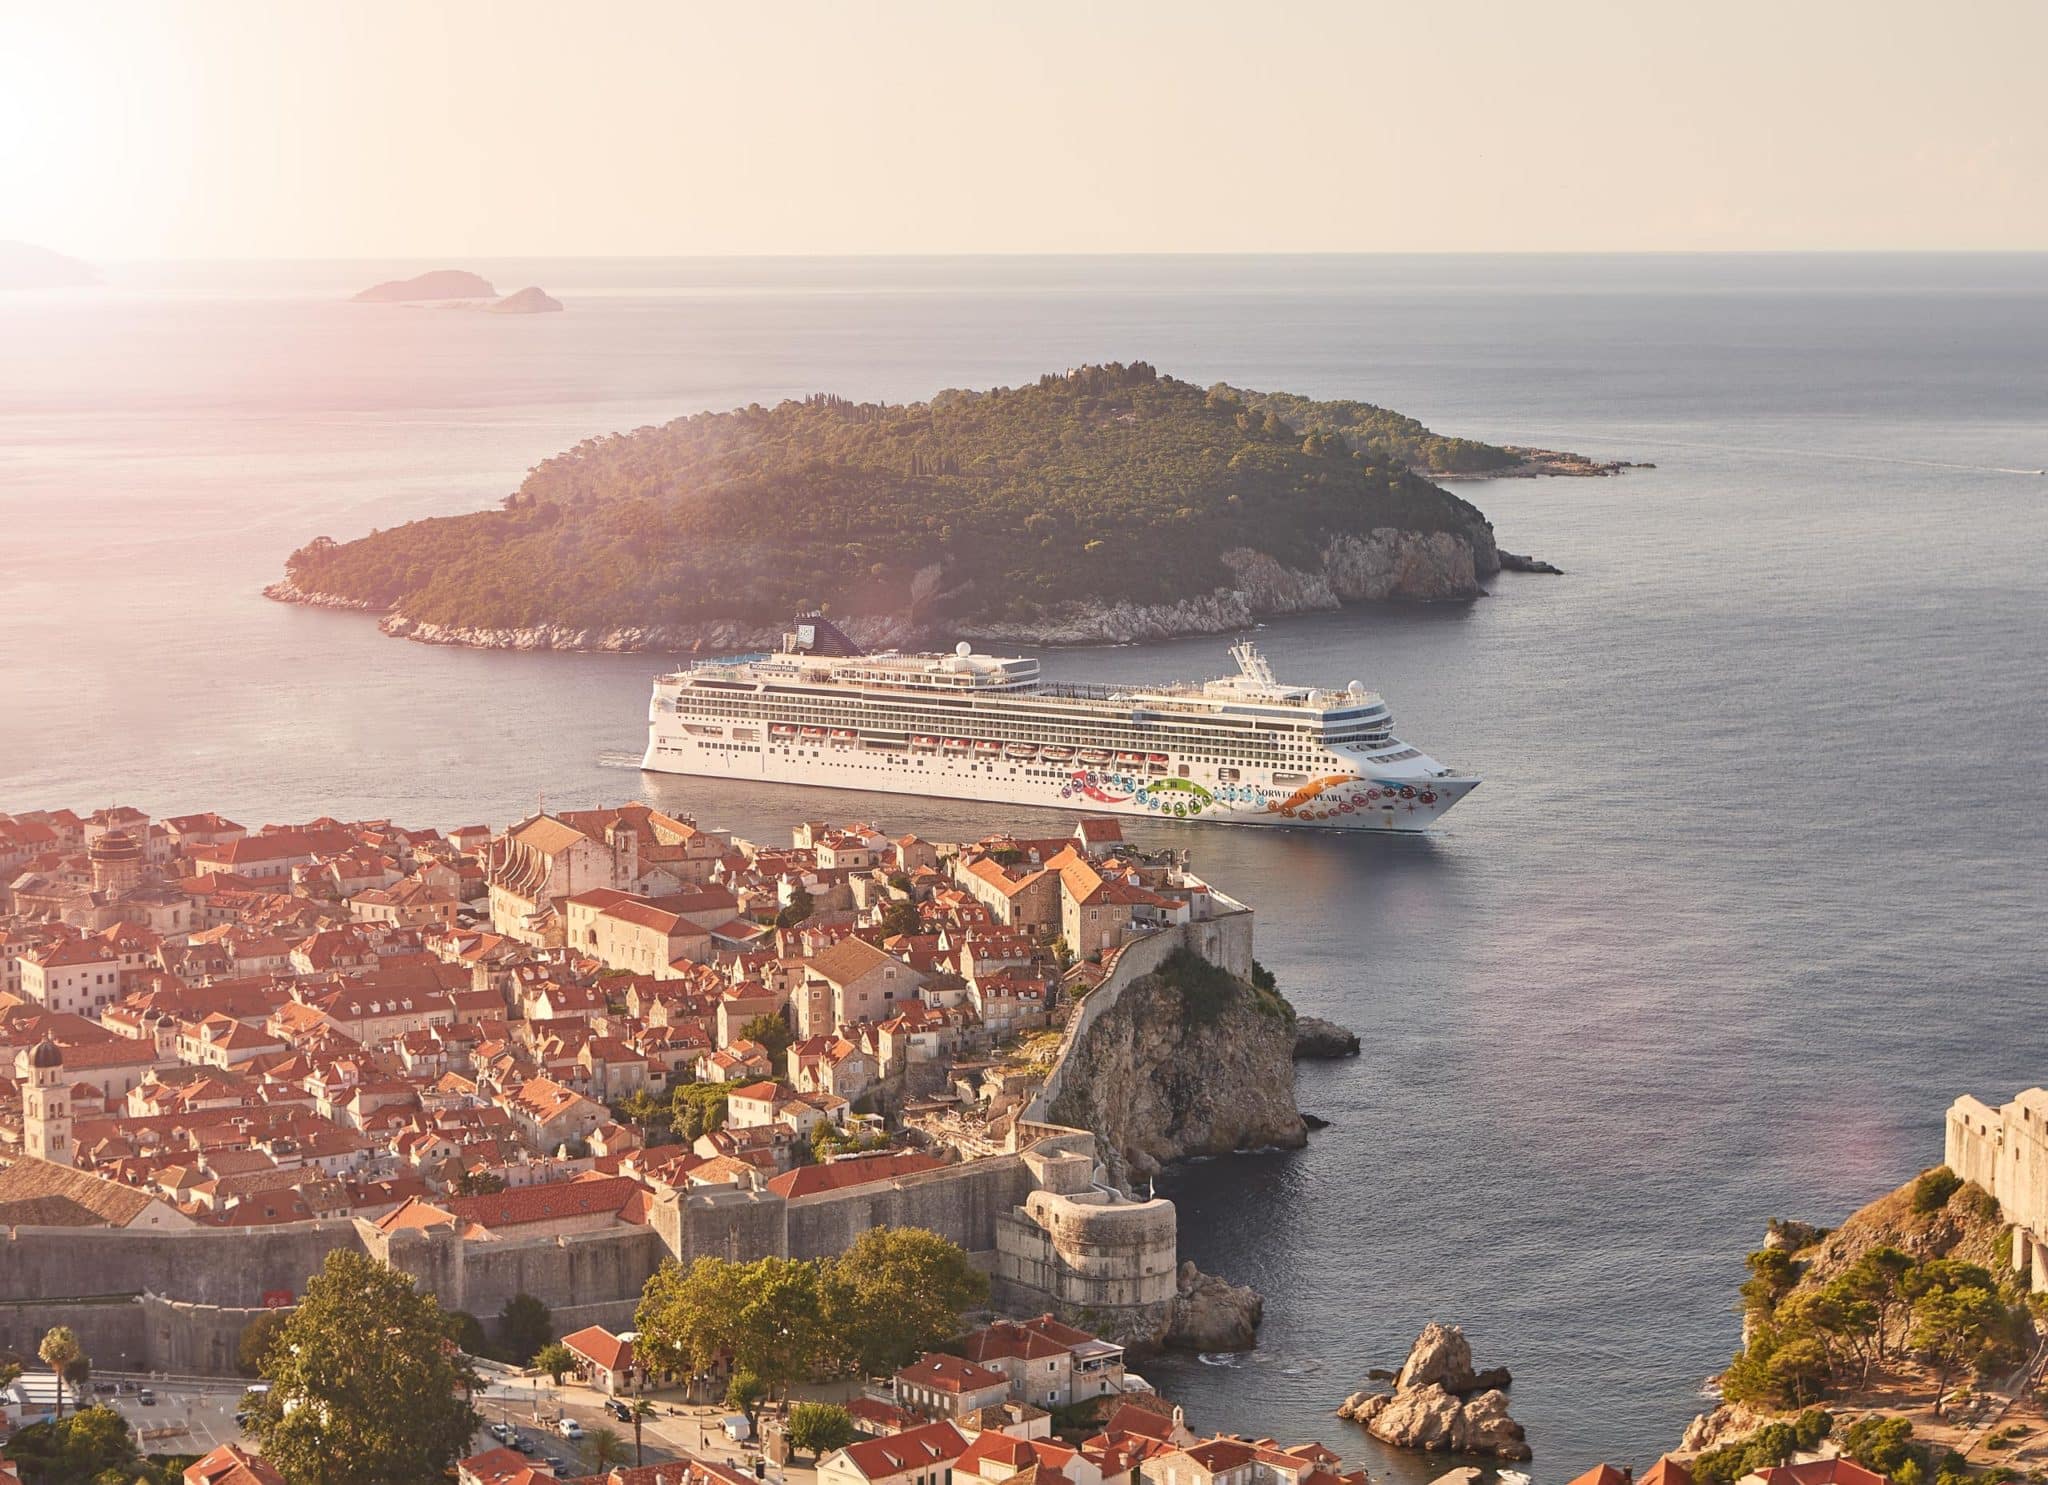 Kreuzfahrtschiff direkt in der Meerenge bei Dubrovnik. Fotografiert mit einer Leica Q vom Hubschrauber aus.